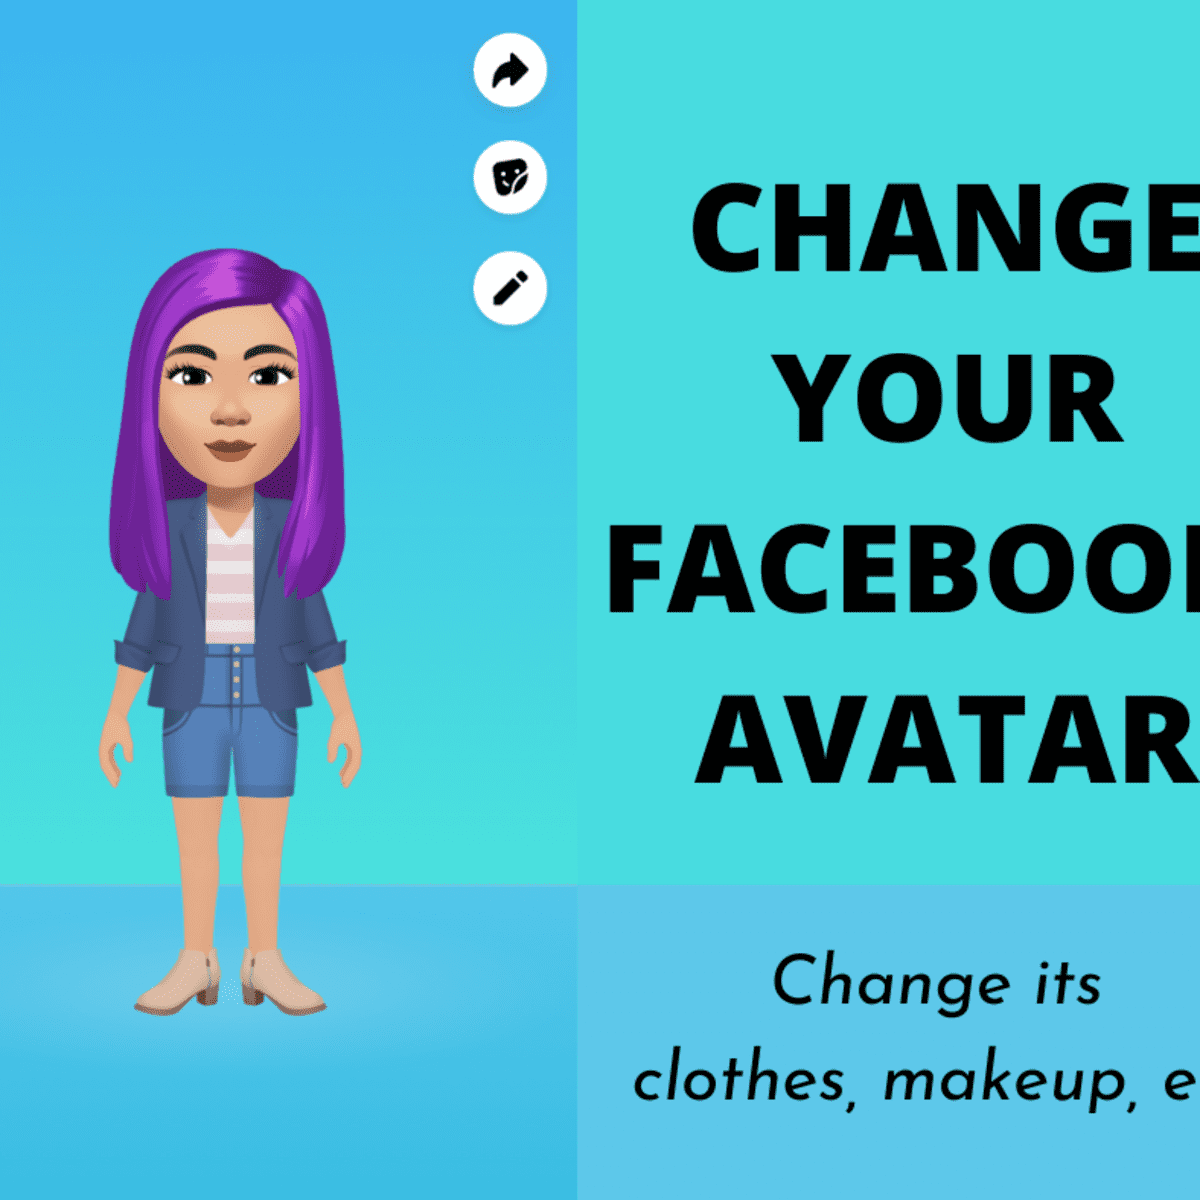 Facebook Avatar Maker tutorial: Bạn đang muốn tạo một Avatar độc đáo trên Facebook? Không cần phải lo lắng vì bây giờ bạn có truy cập vào hướng dẫn tạo Avatar Maker của Facebook! Với một vài cú nhấp chuột, bạn sẽ có một bức hình hoàn hảo cho hồ sơ Facebook của mình.